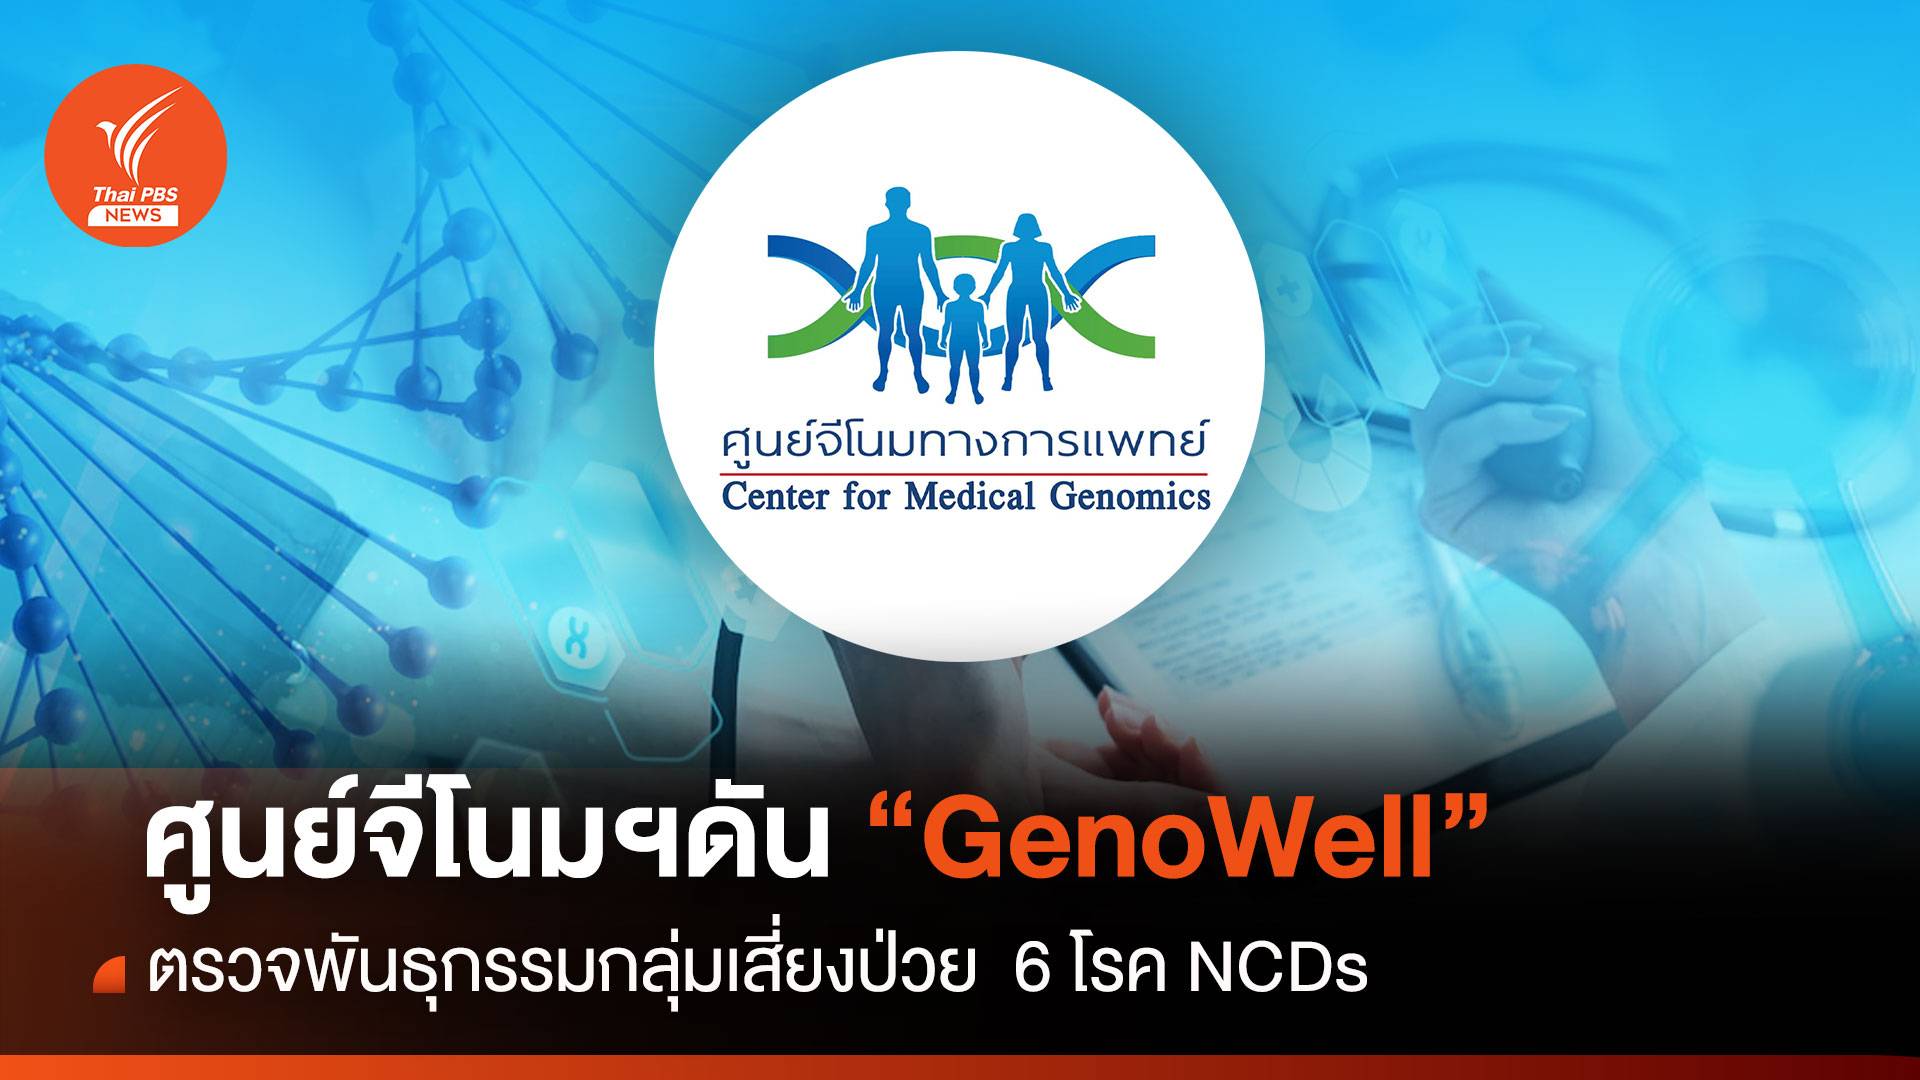  ศูนย์จีโนมฯ ดัน "GenoWell" ตรวจพันธุกรรมกลุ่มเสี่ยงป่วย 6 โรค NCDs